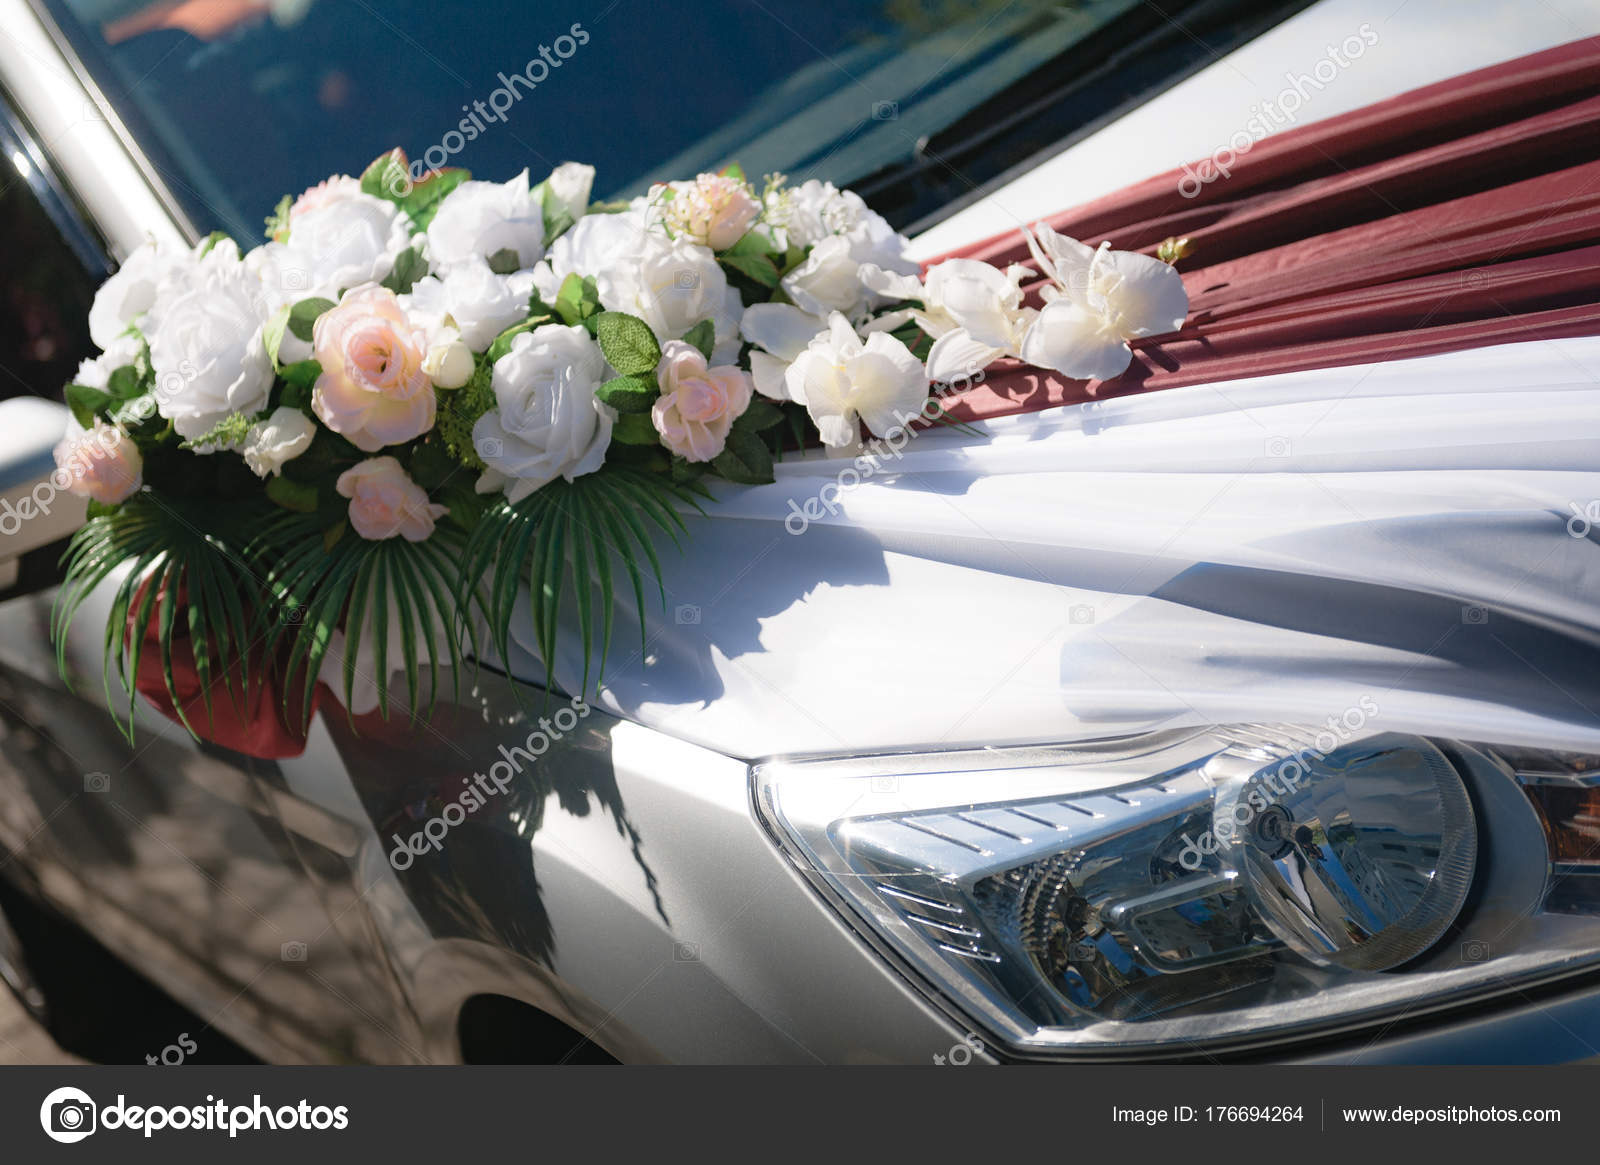 Wedding Car Wedding Decoration Wedding Car Luxury Wedding Car ...